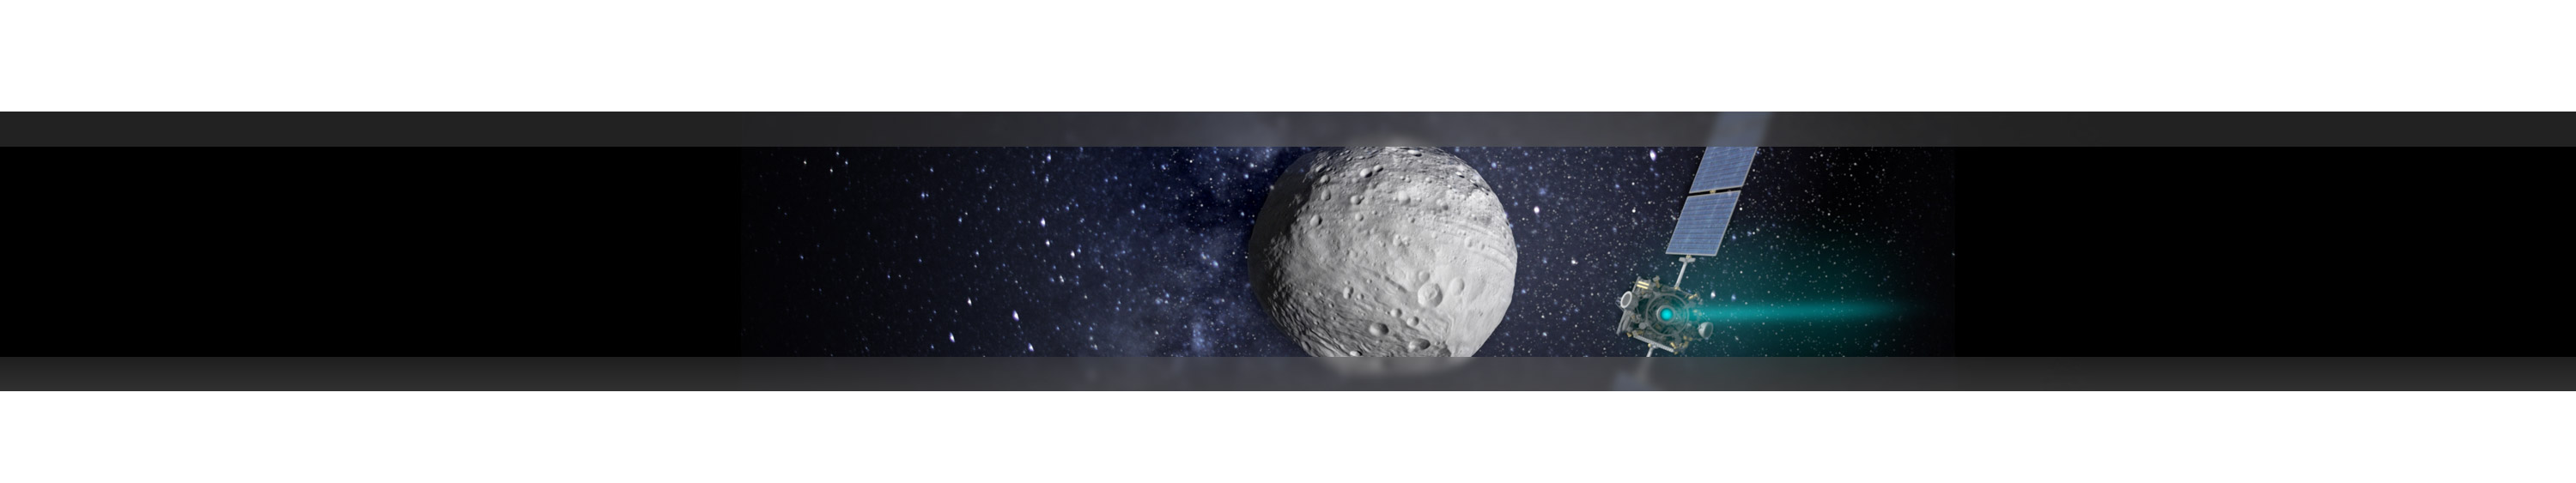 prfuk-bg-otvirak-asteroid02.jpg